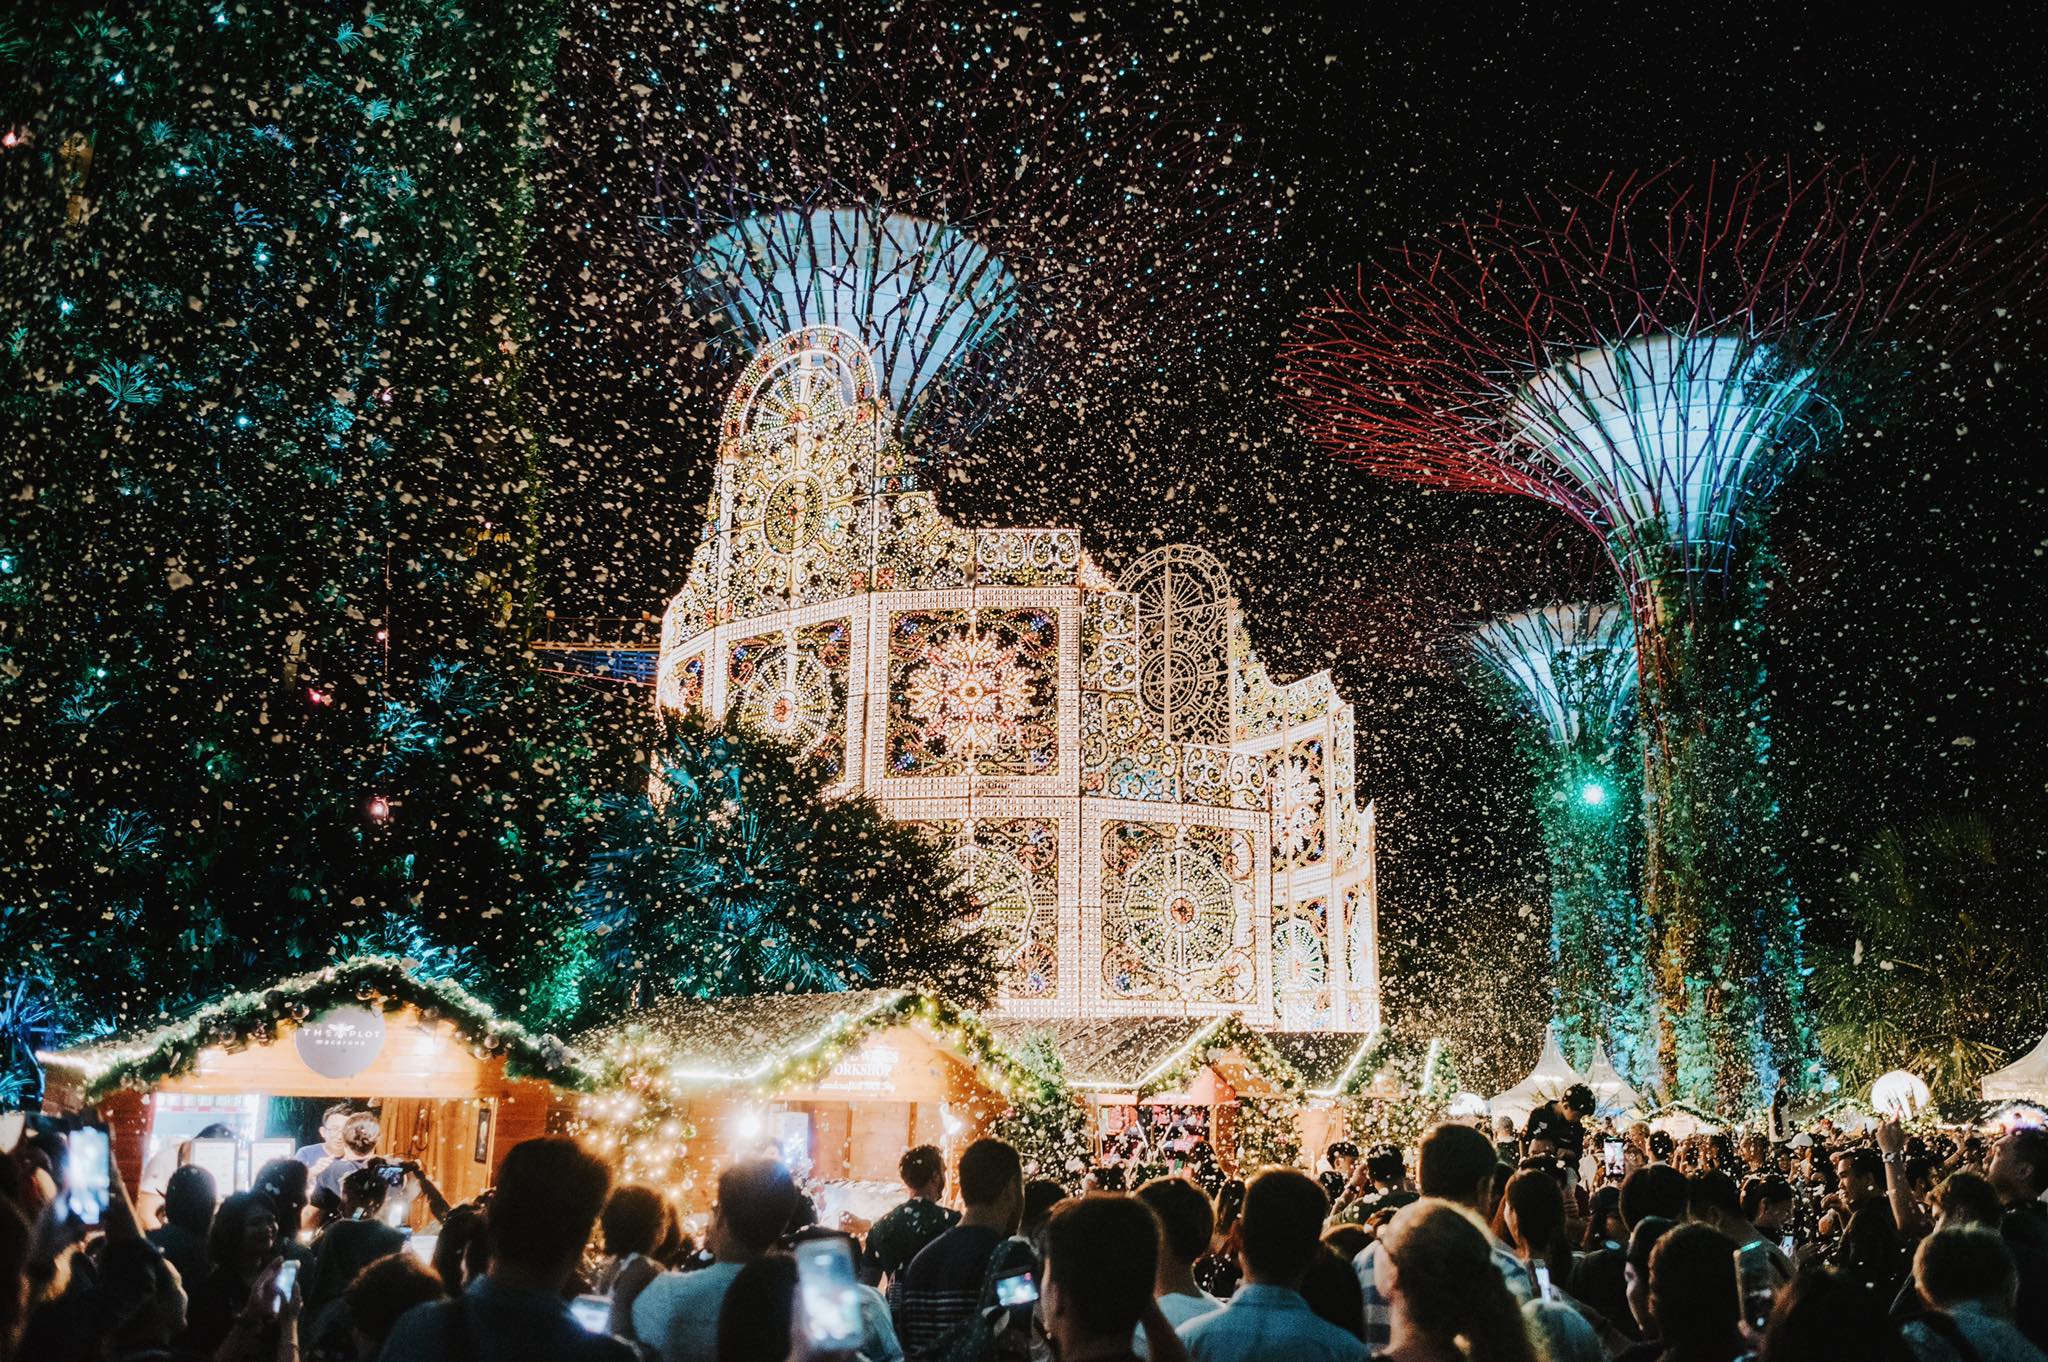 Có thể không có tuyết hay tuần lộc, nhưng Giáng Sinh ở Singapore 🇸🇬 cũng sôi động như bất kỳ lễ hội nào khác trong năm. Giáng sinh ở Singapore là một dịp lễ lớn khiến du khách có thêm lý do để làm những gì mình yêu thích nhất, đó là ăn uống và mua sắm.